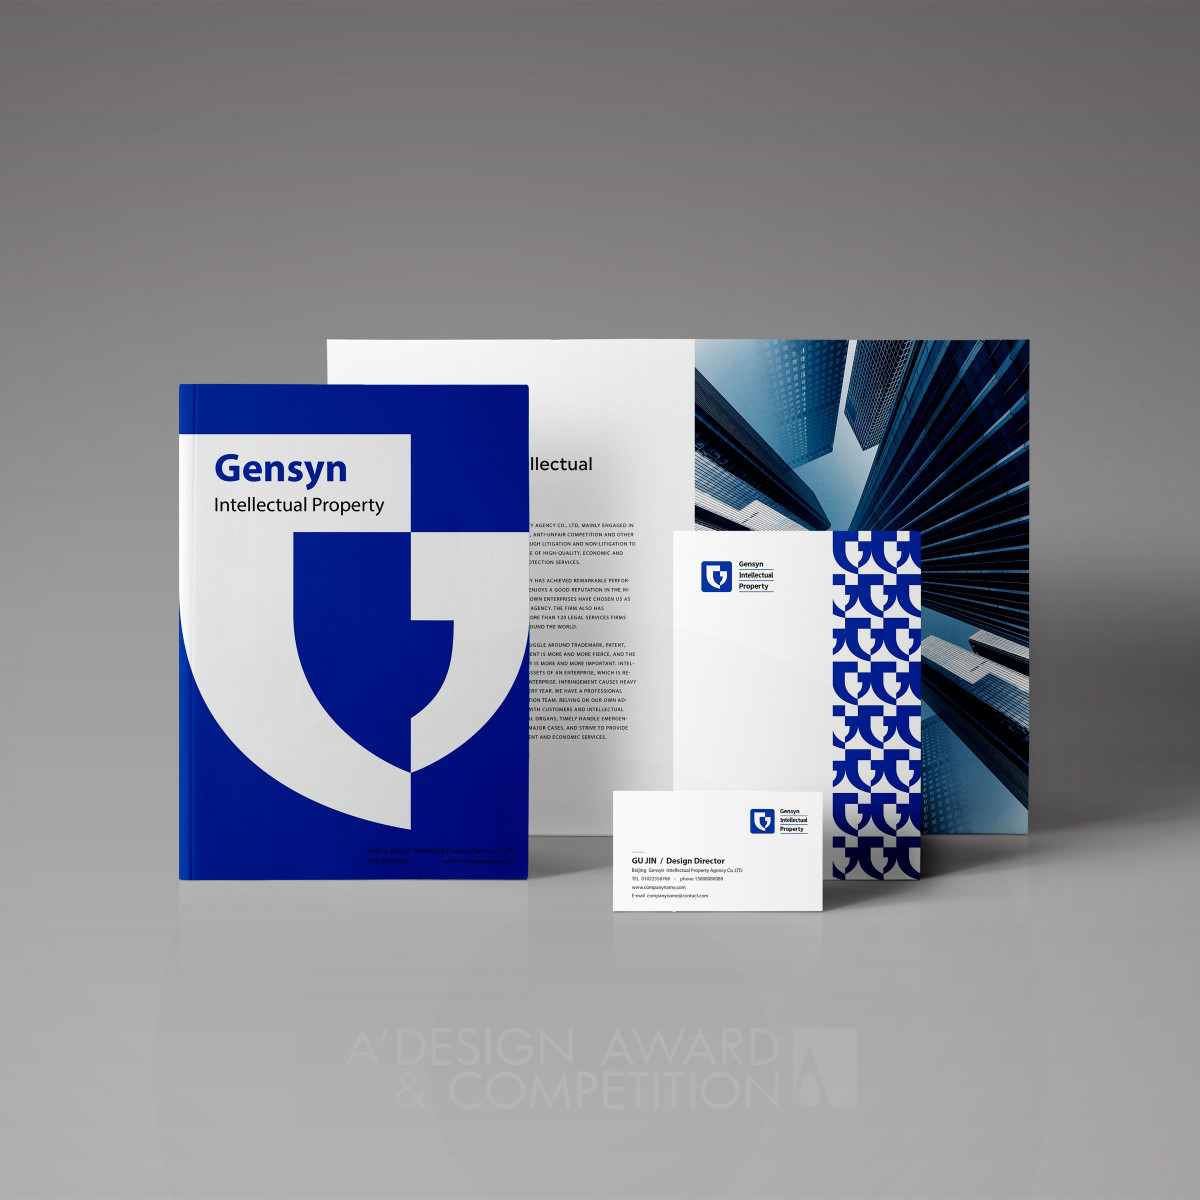 Gu Jin's Gensyn Logo: A Shield for Intellectual Property